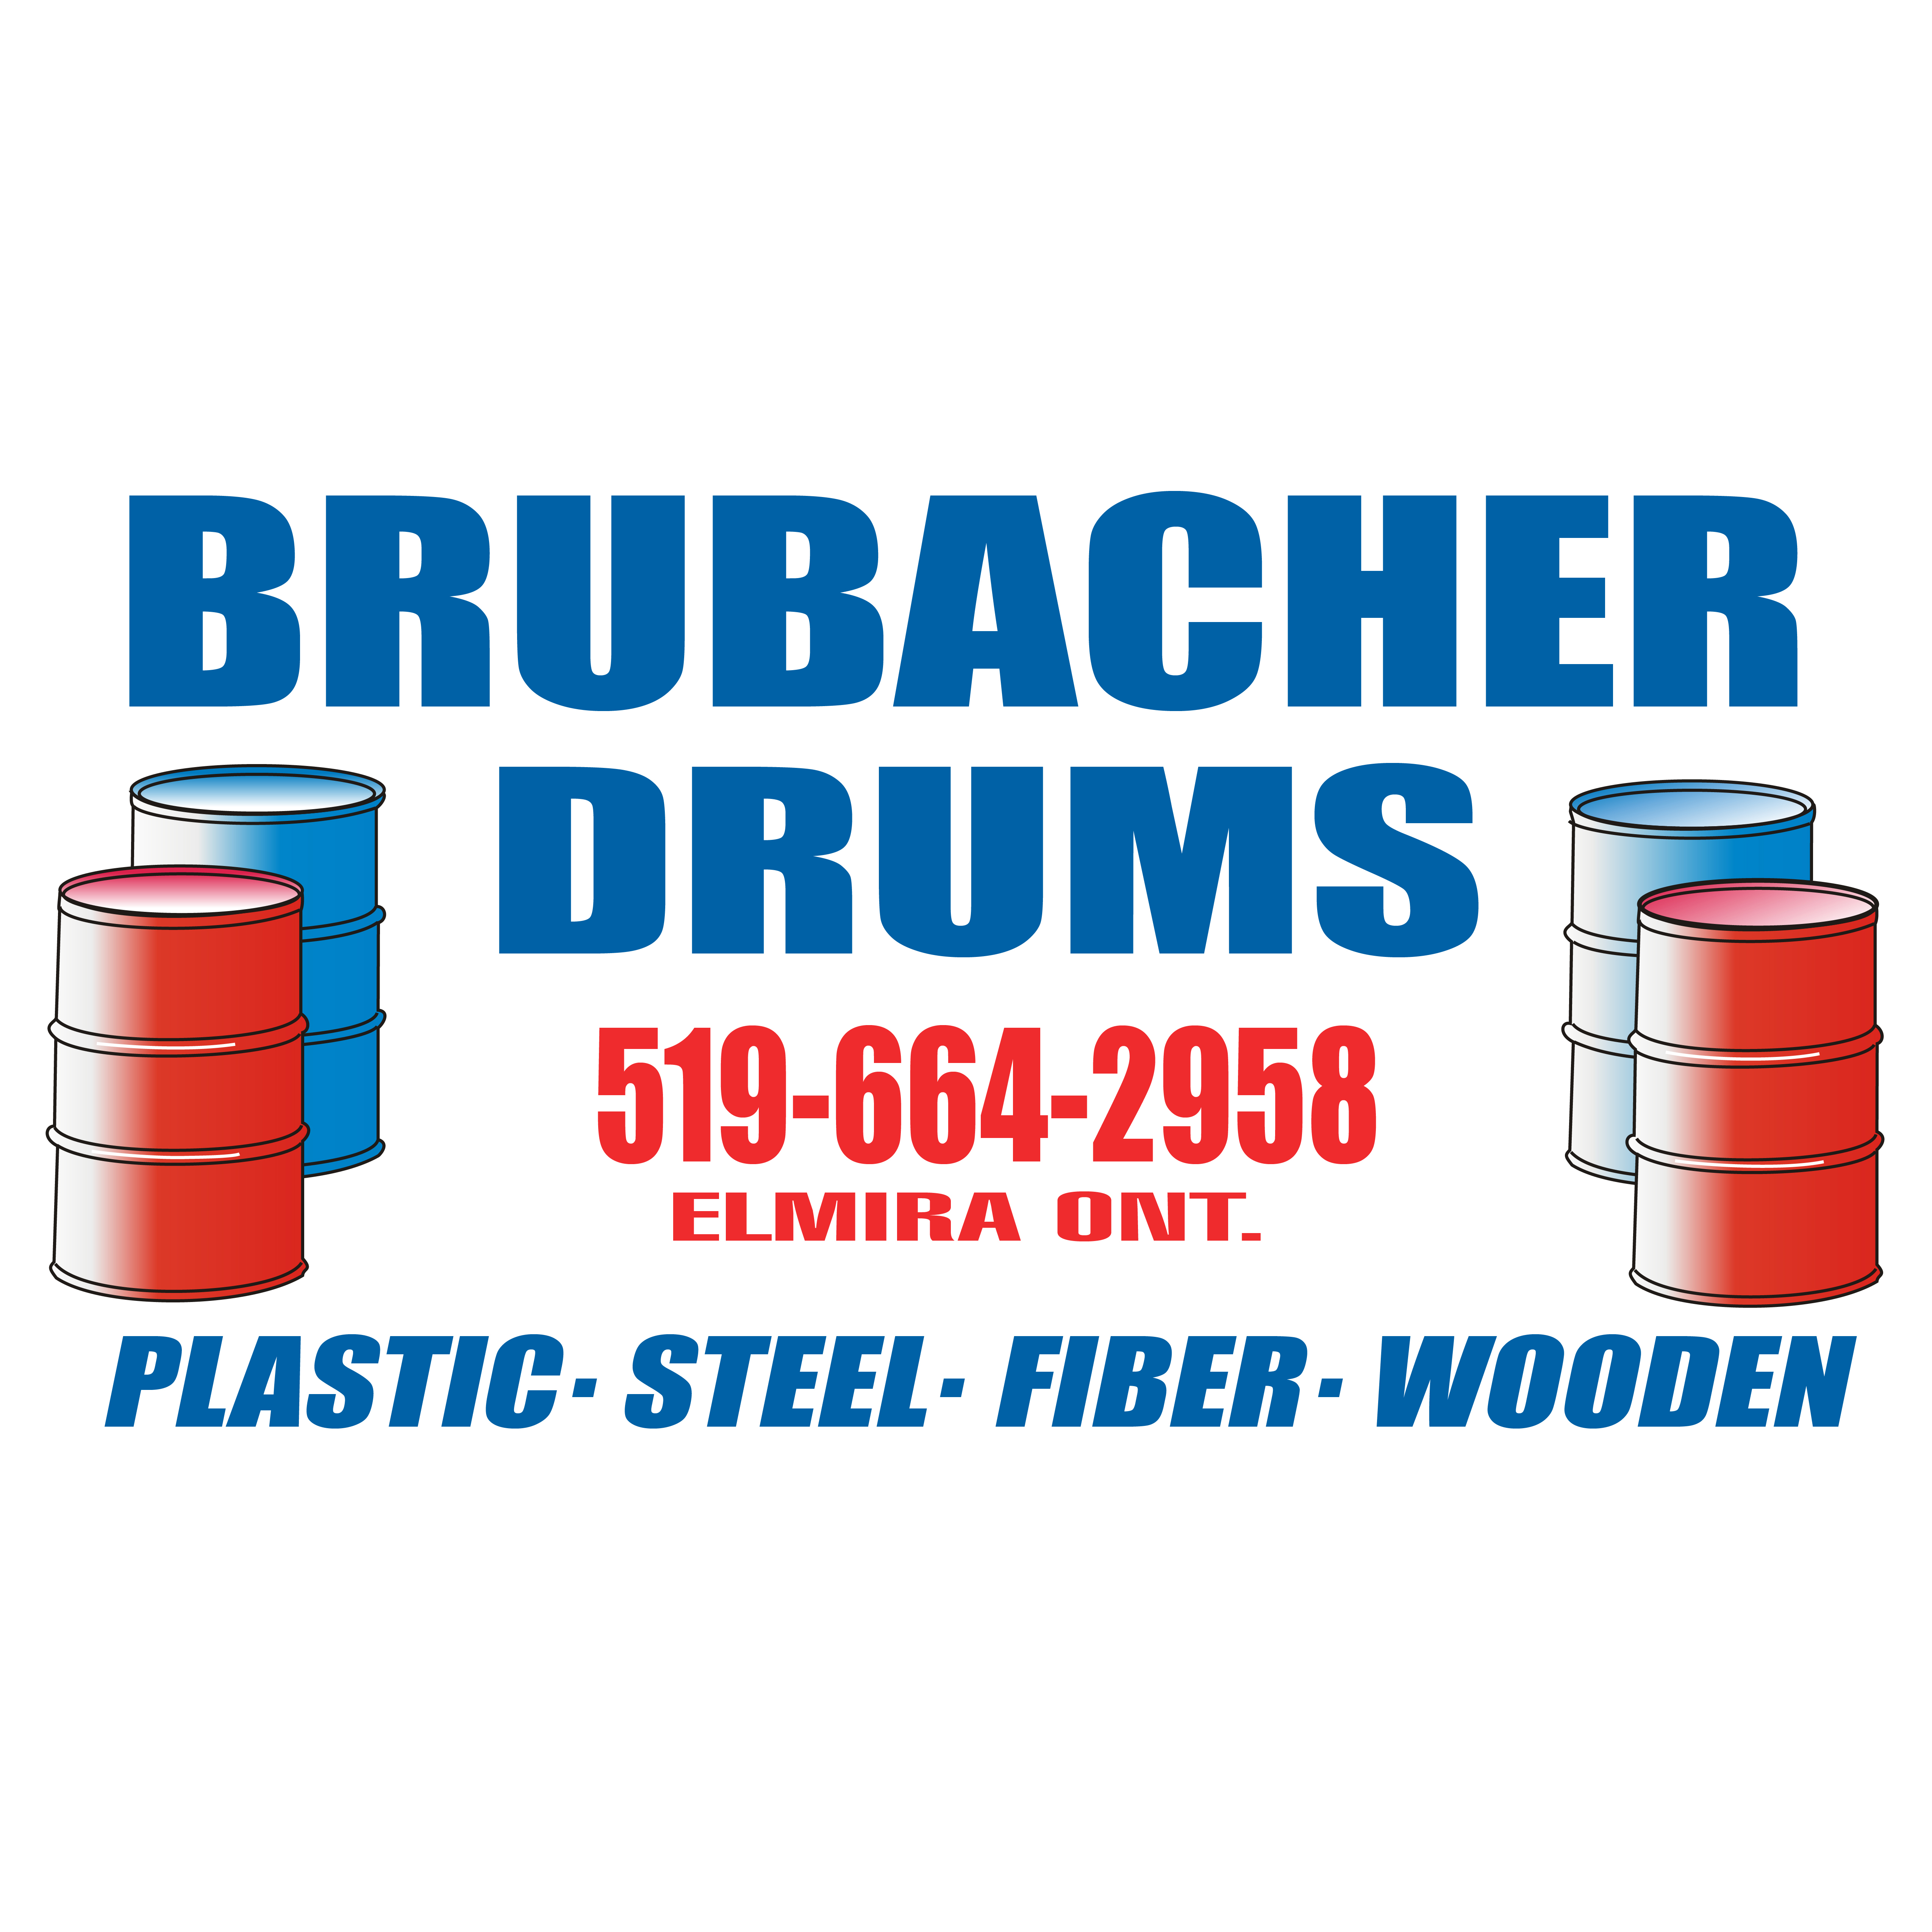 Brubacher Drums Elmira (519)664-2958